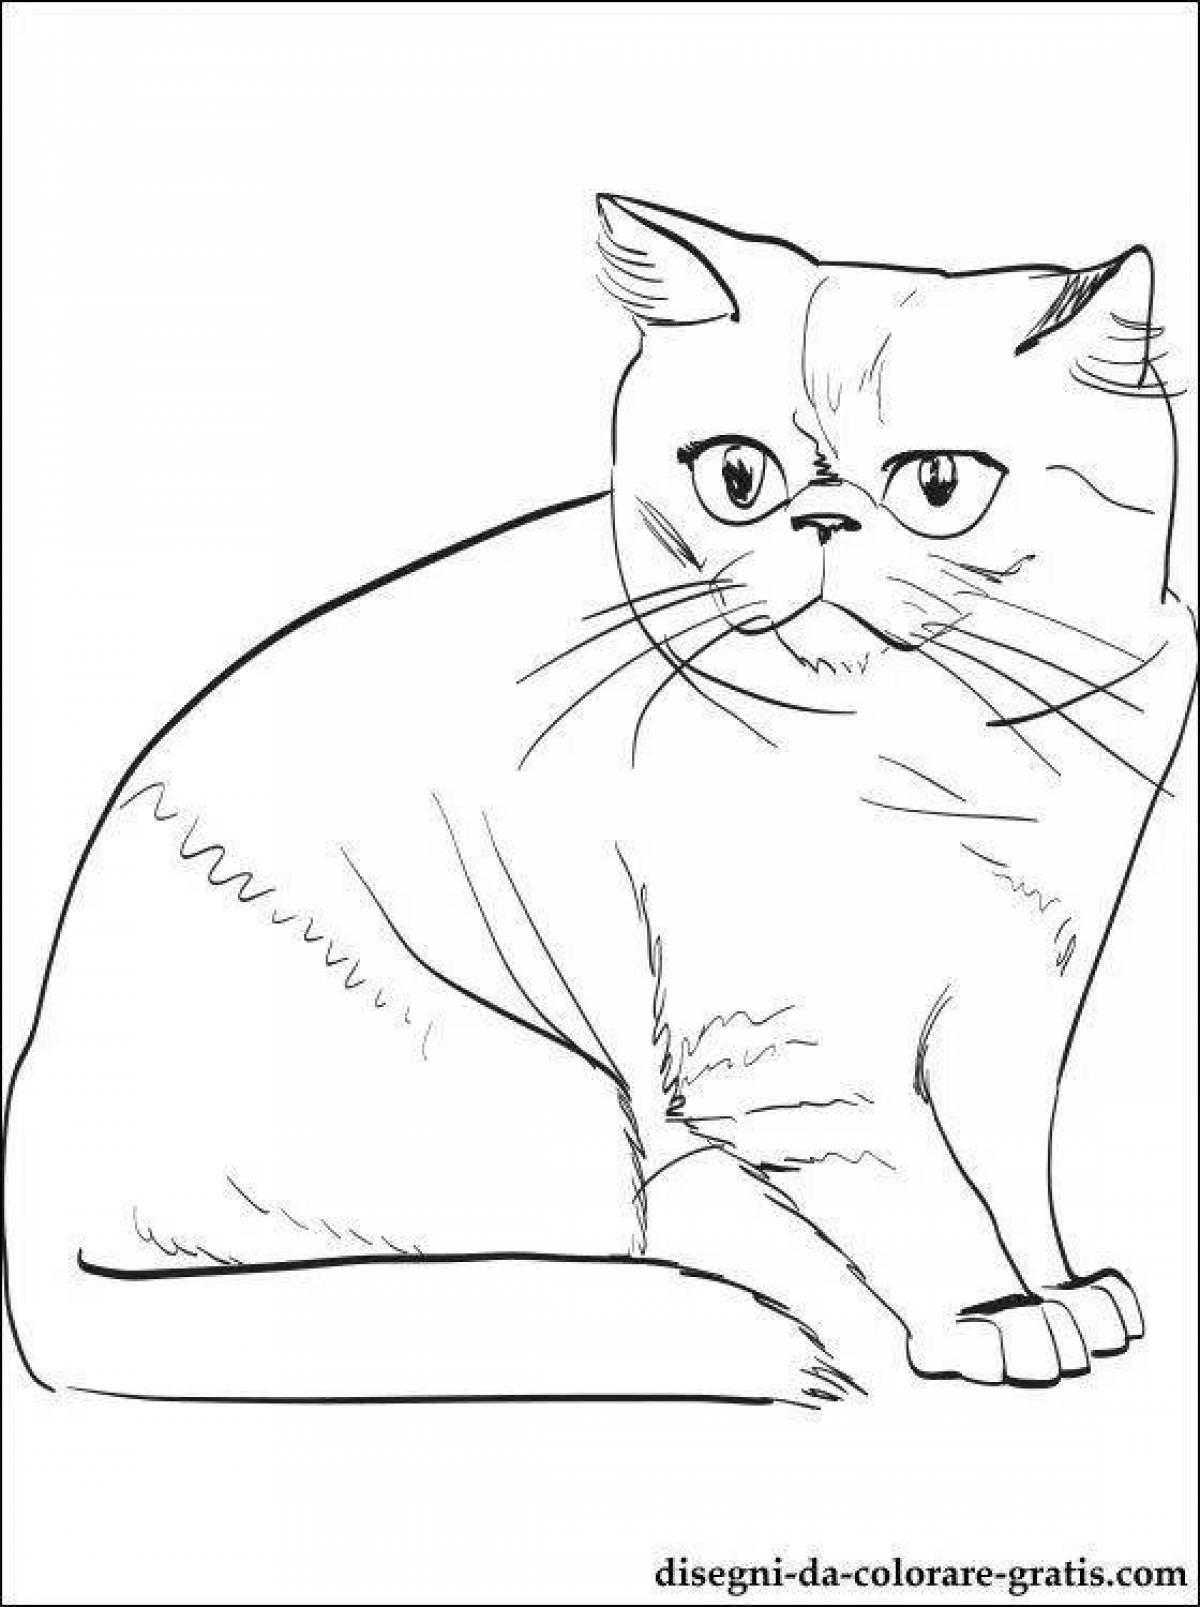 Цветная страница раскраски кошки-карандаша